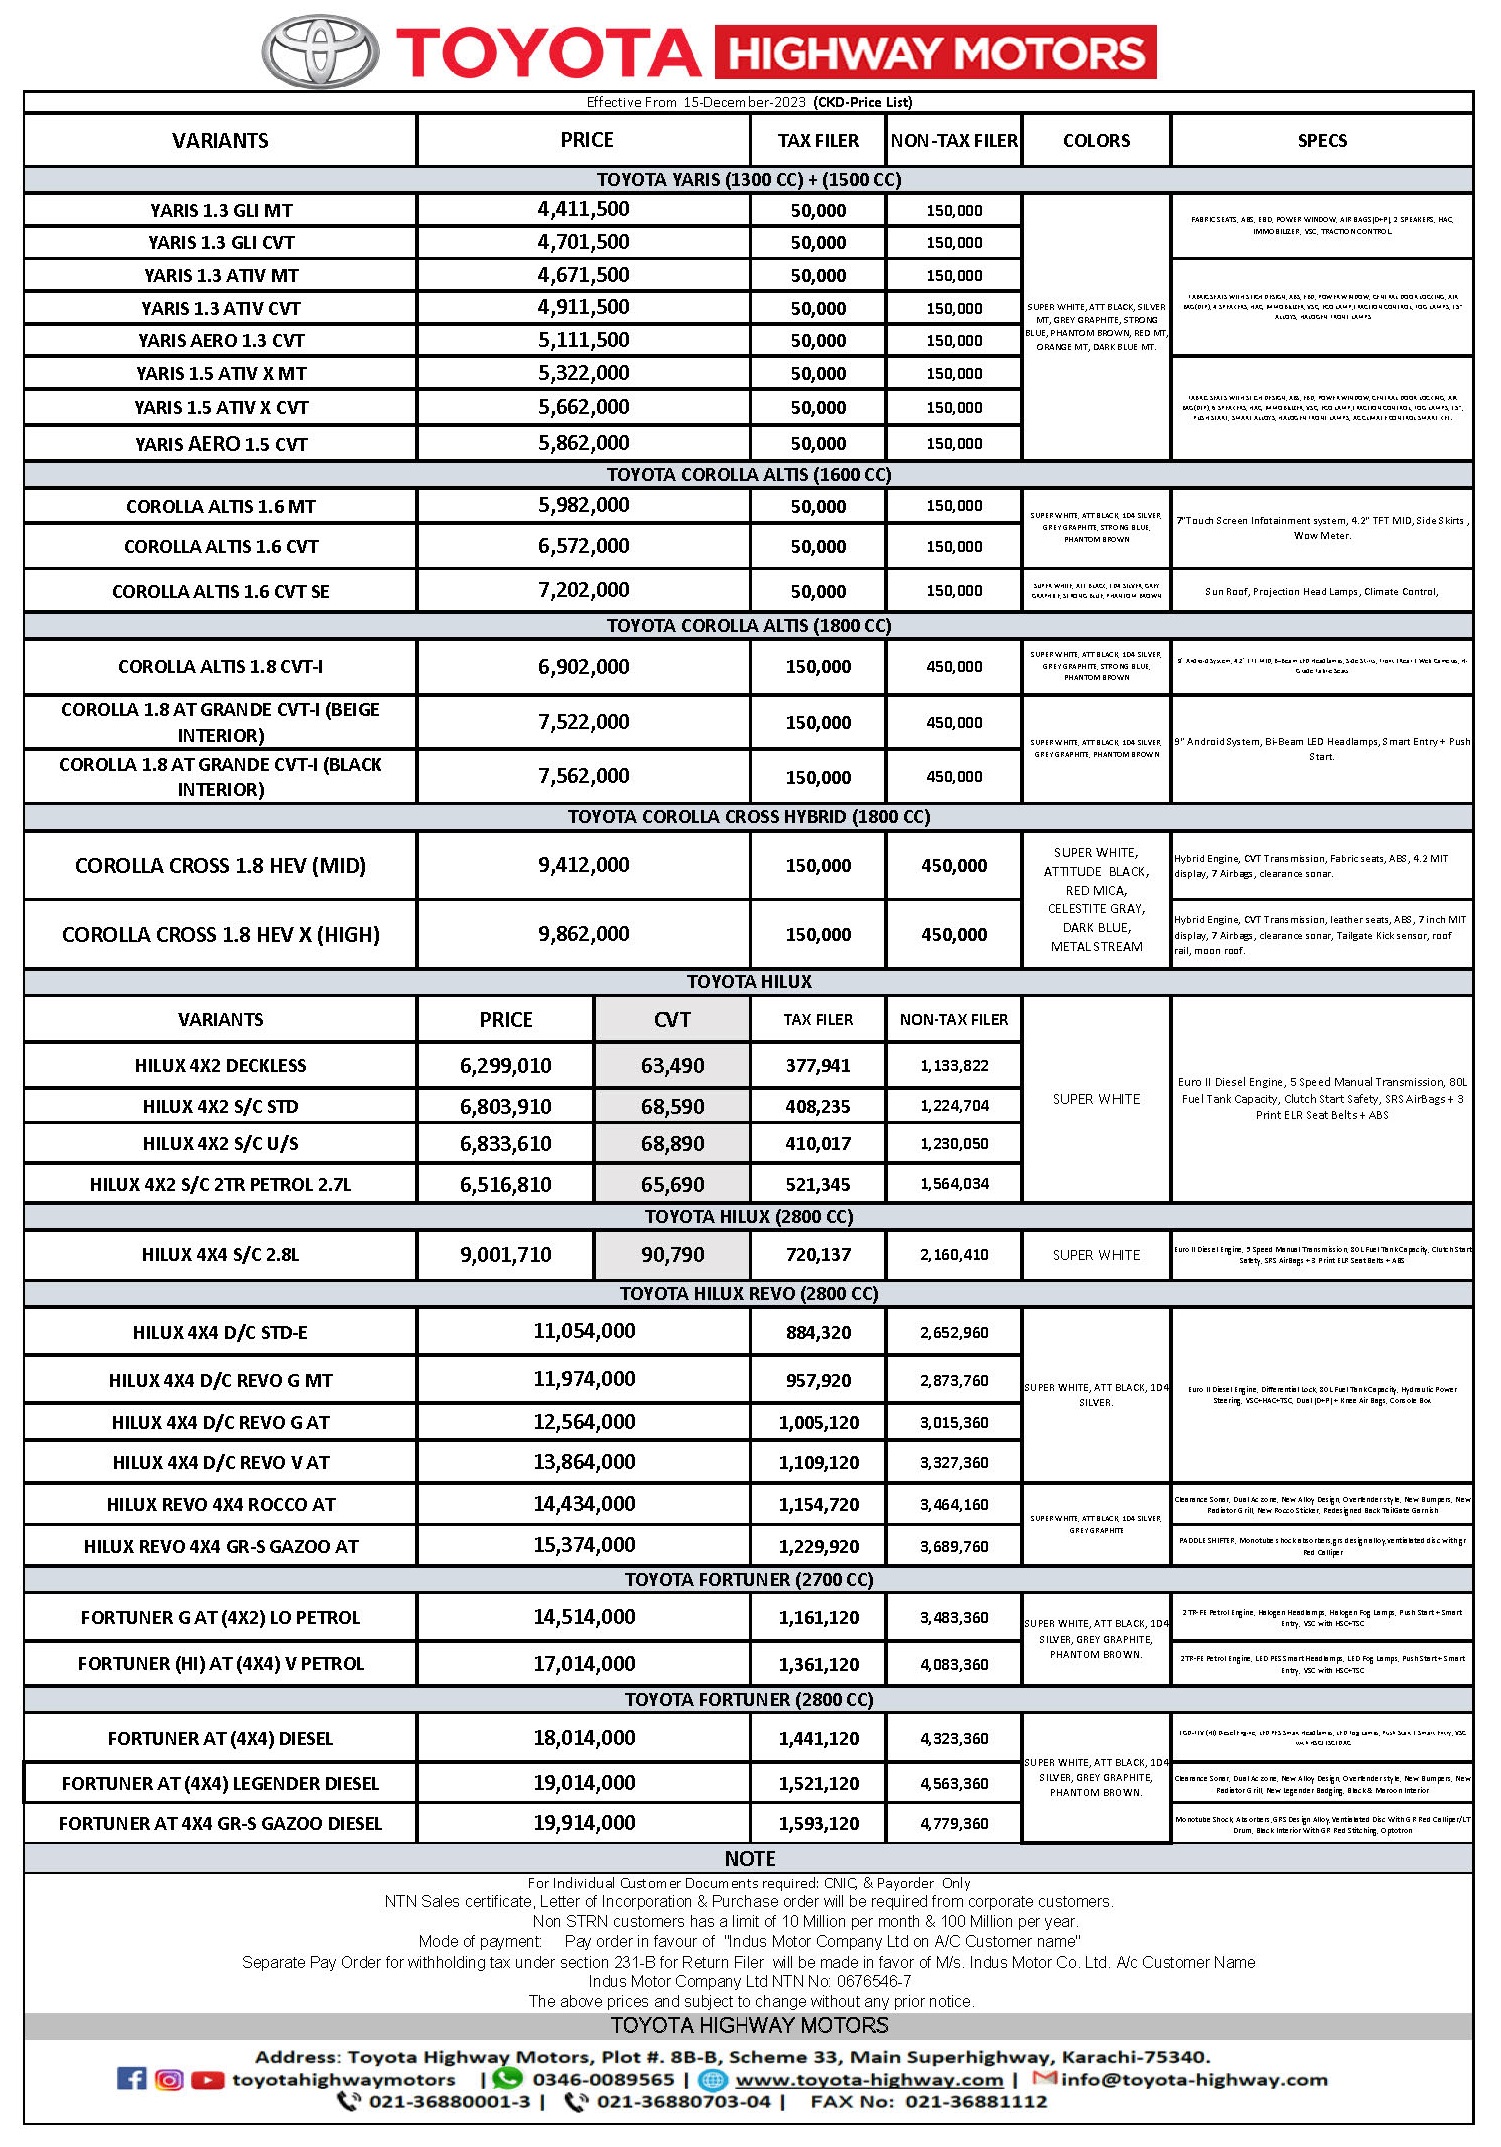 Toyota Vehciles Price List